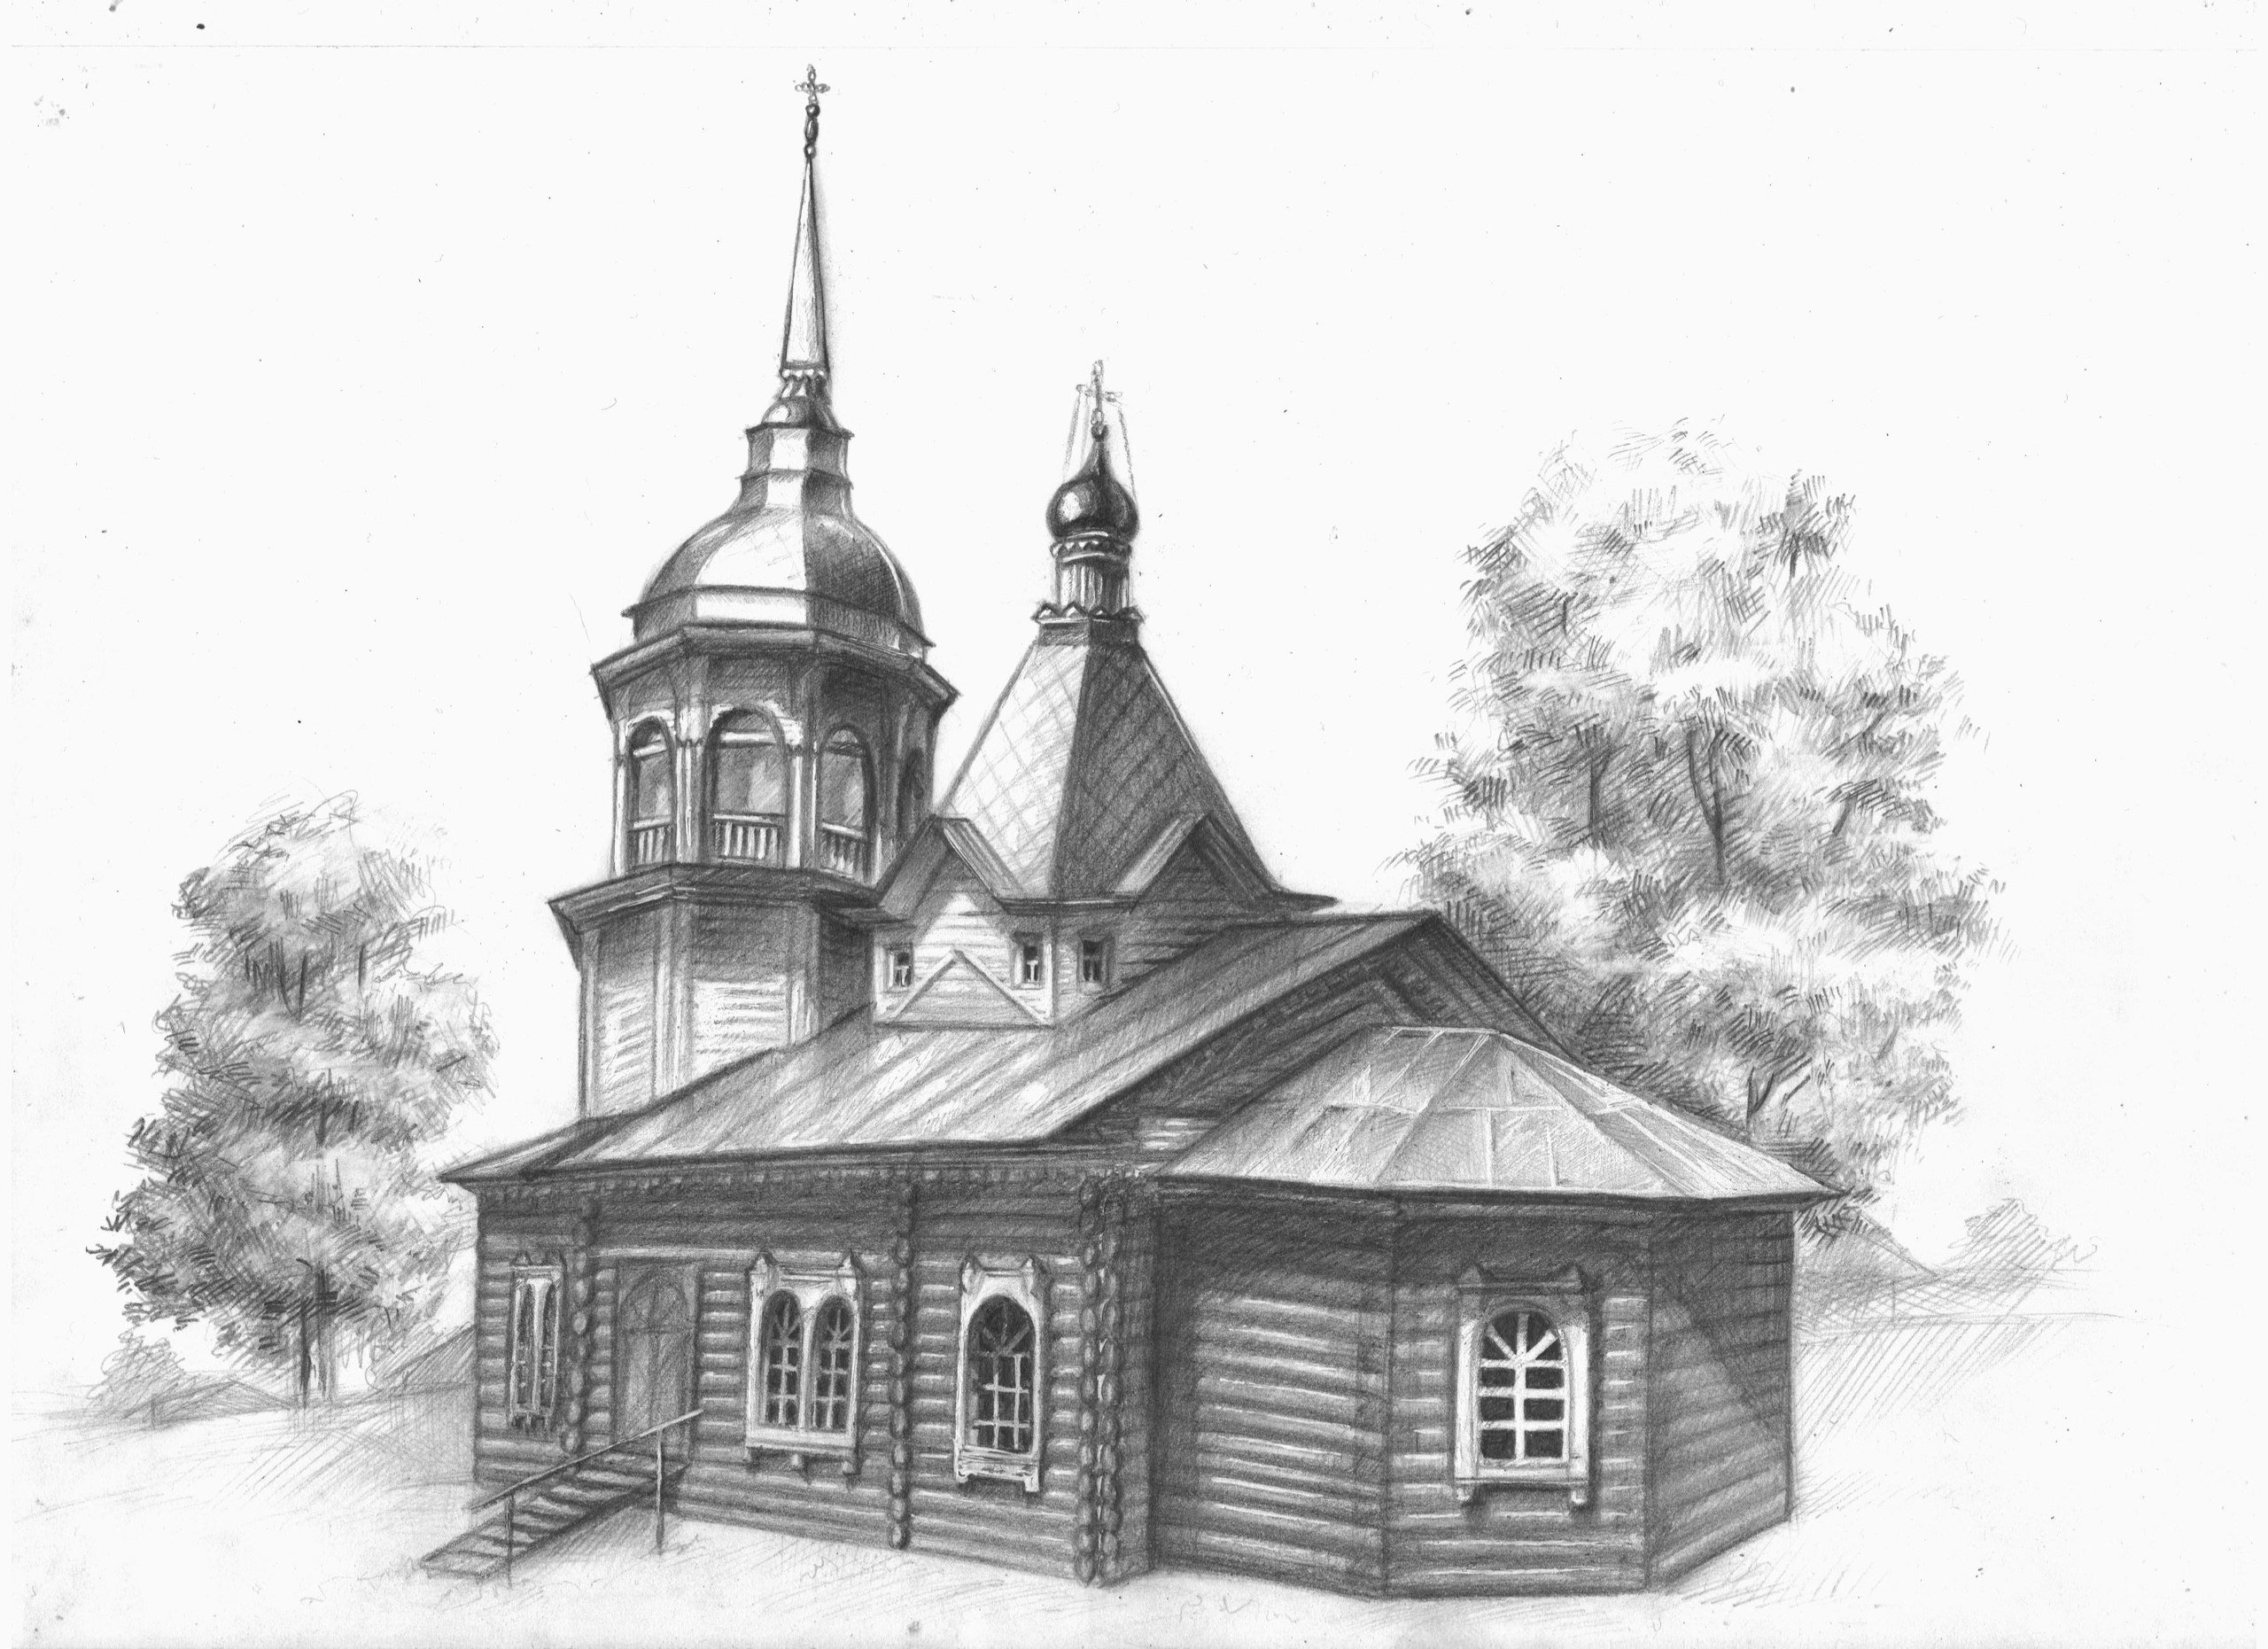 Церковь в графике деревянная